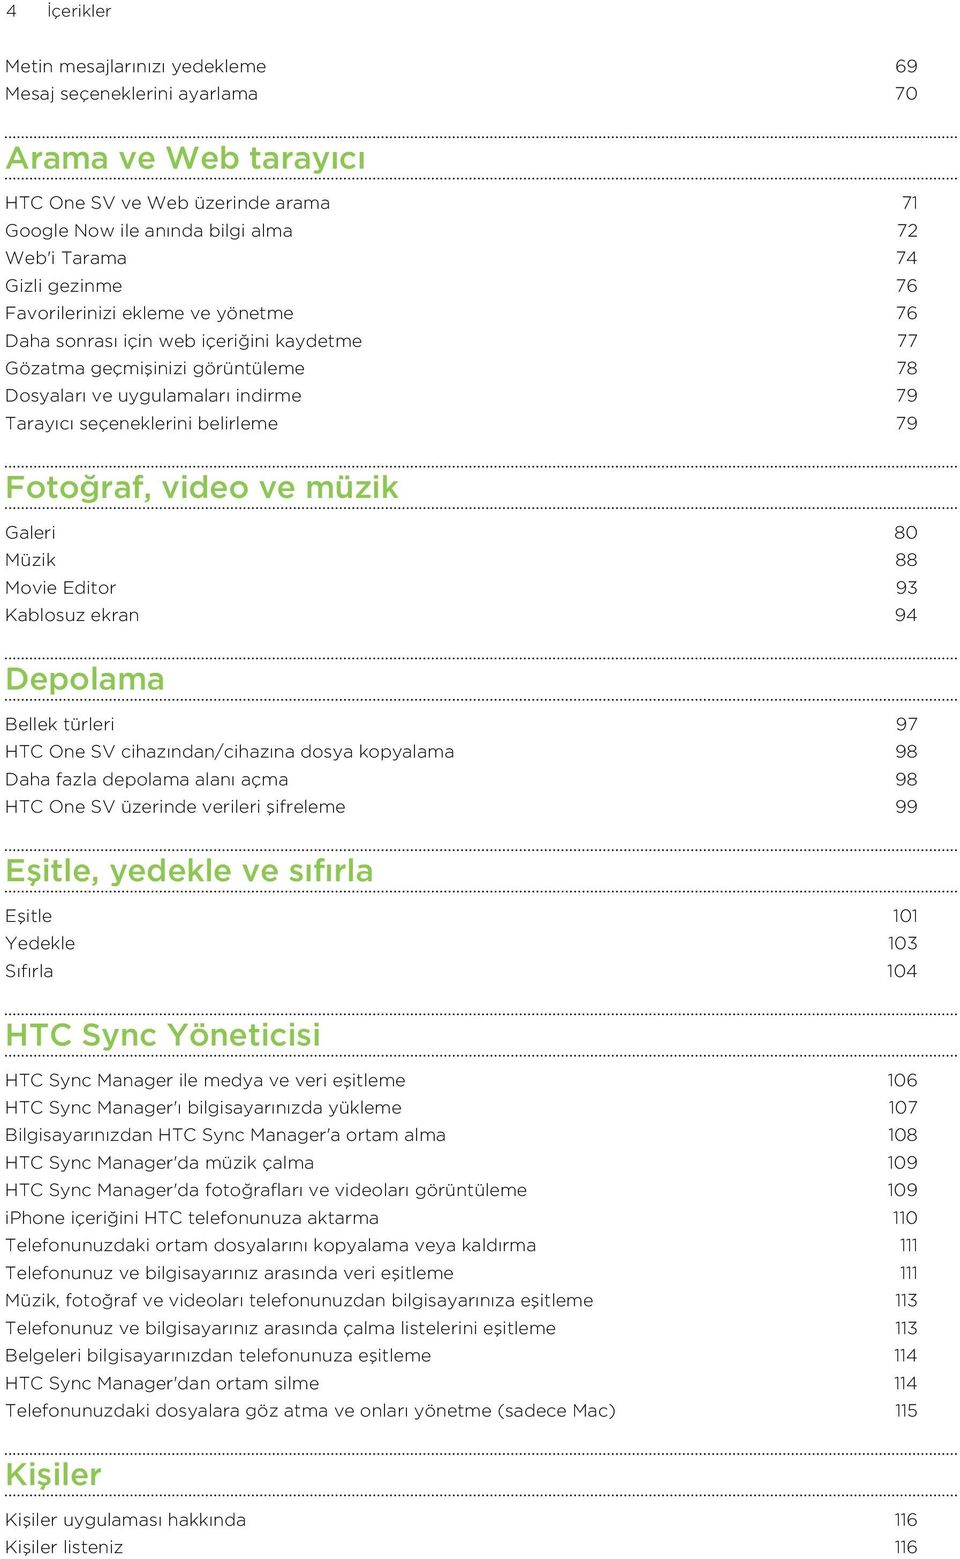 Fotoğraf, video ve müzik Galeri 80 Müzik 88 Movie Editor 93 Kablosuz ekran 94 Depolama Bellek türleri 97 HTC One SV cihazından/cihazına dosya kopyalama 98 Daha fazla depolama alanı açma 98 HTC One SV